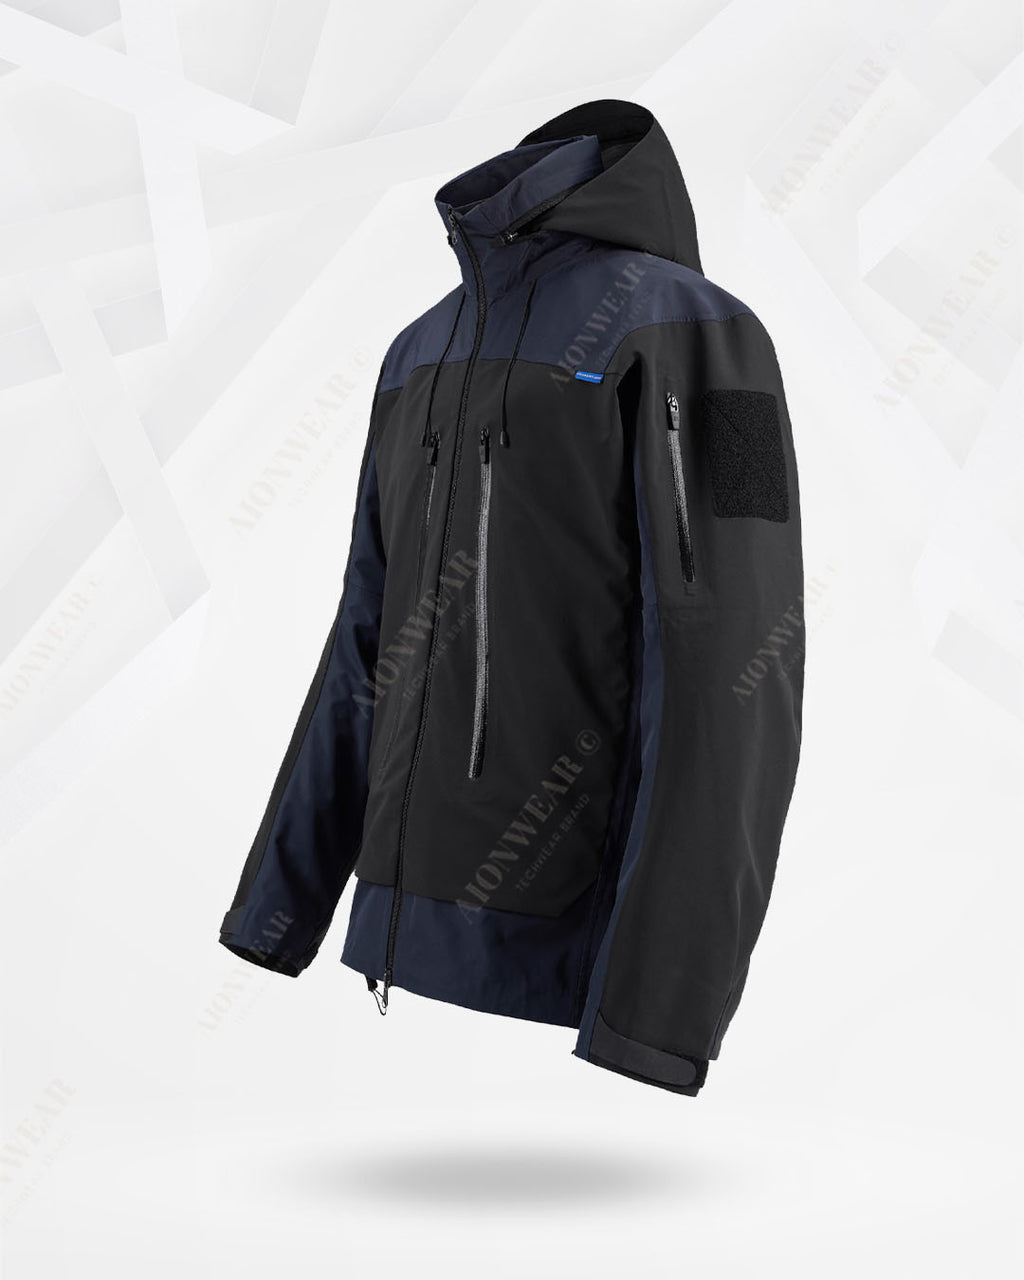 All-Weather Adaptive Hardshell Jacket